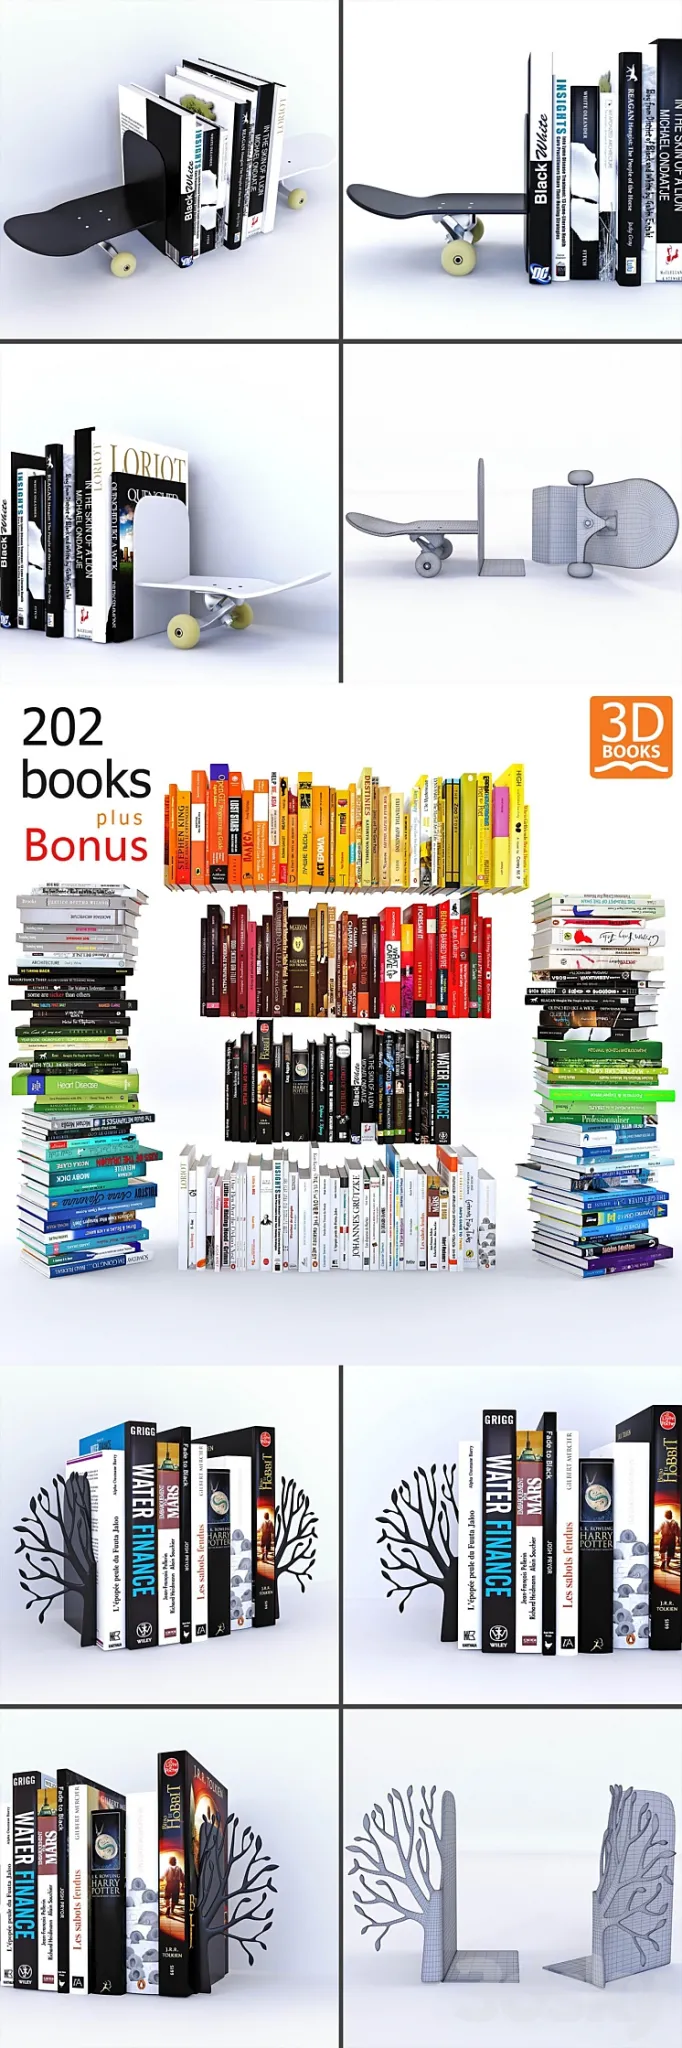 202 Books + BONUS 3DS Max